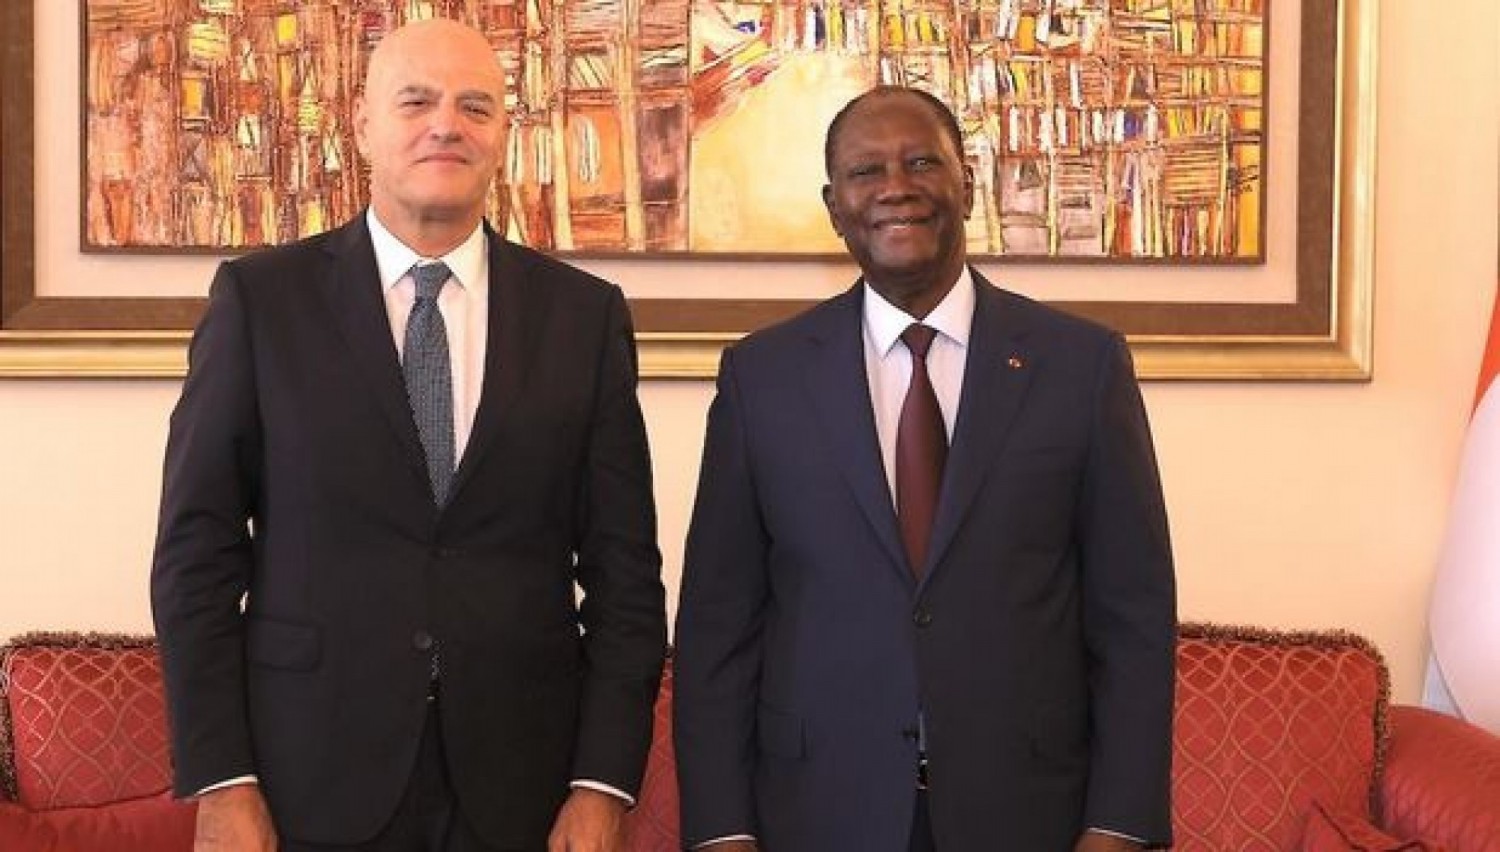 Côte d'Ivoire : En audience avec Ouattara, ENI annonce que les gisements découverts permettront de doubler la production de gaz et d'accroitre la production électrique